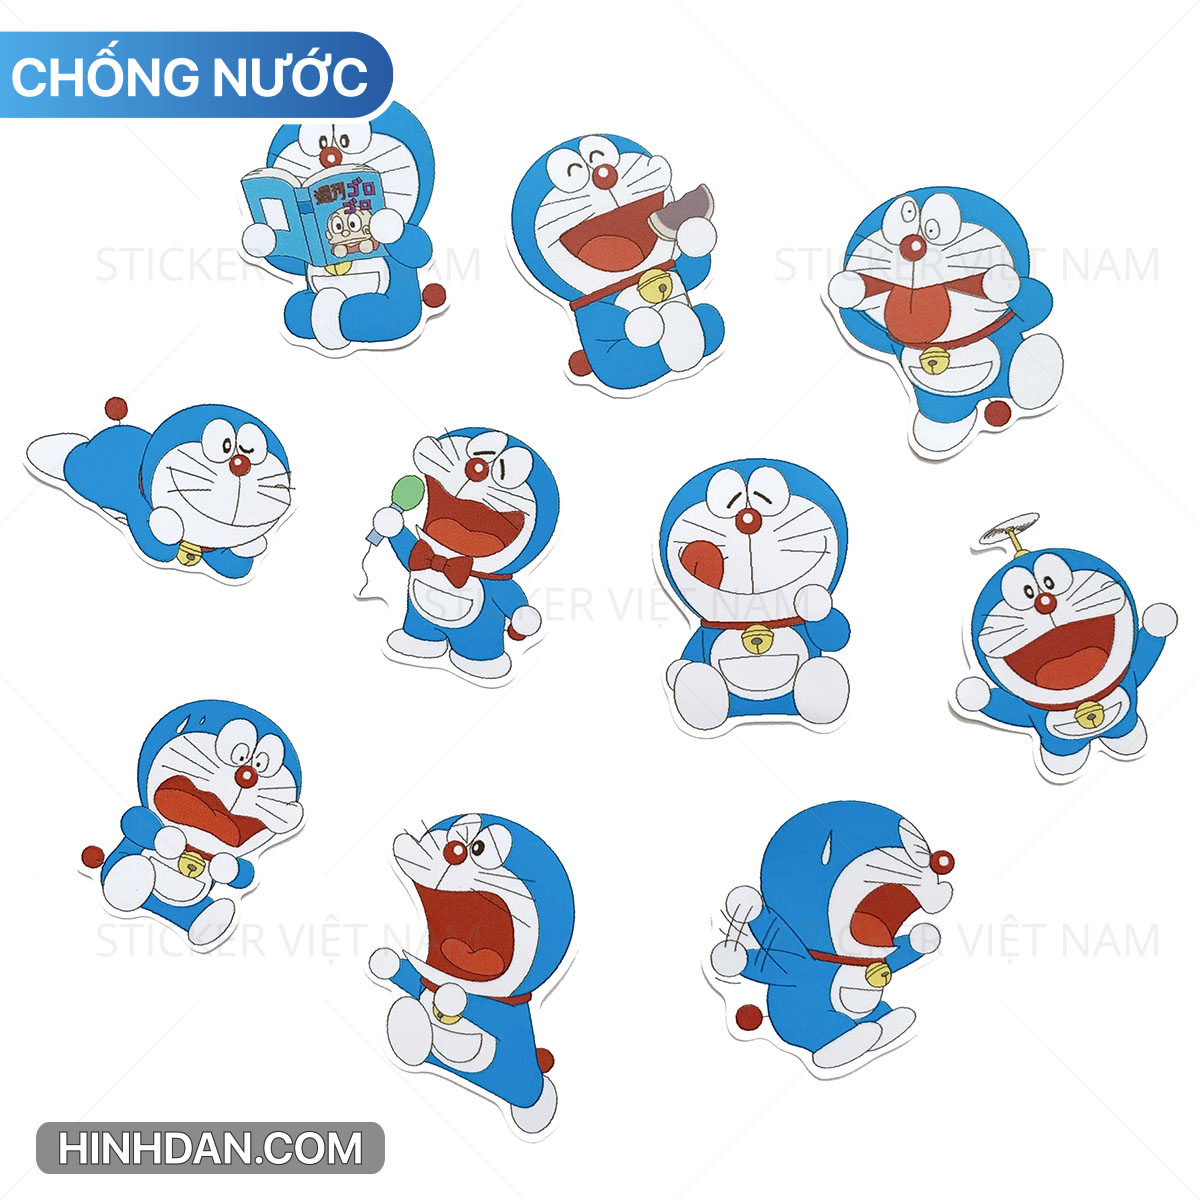 Sticker Doraemon mới: Bạn yêu thích Doraemon và muốn những cuộn Sticker mới để thường xuyên trò chuyện với bạn bè trên các ứng dụng chat? Chúng tôi sẽ mang đến cho bạn những Sticker Doraemon mới nhất, với nhiều biểu cảm và phong cách độc đáo. Hãy tải ngay bộ Sticker Doraemon mới này và bắt đầu cuộc trò chuyện thú vị với bạn bè của bạn!